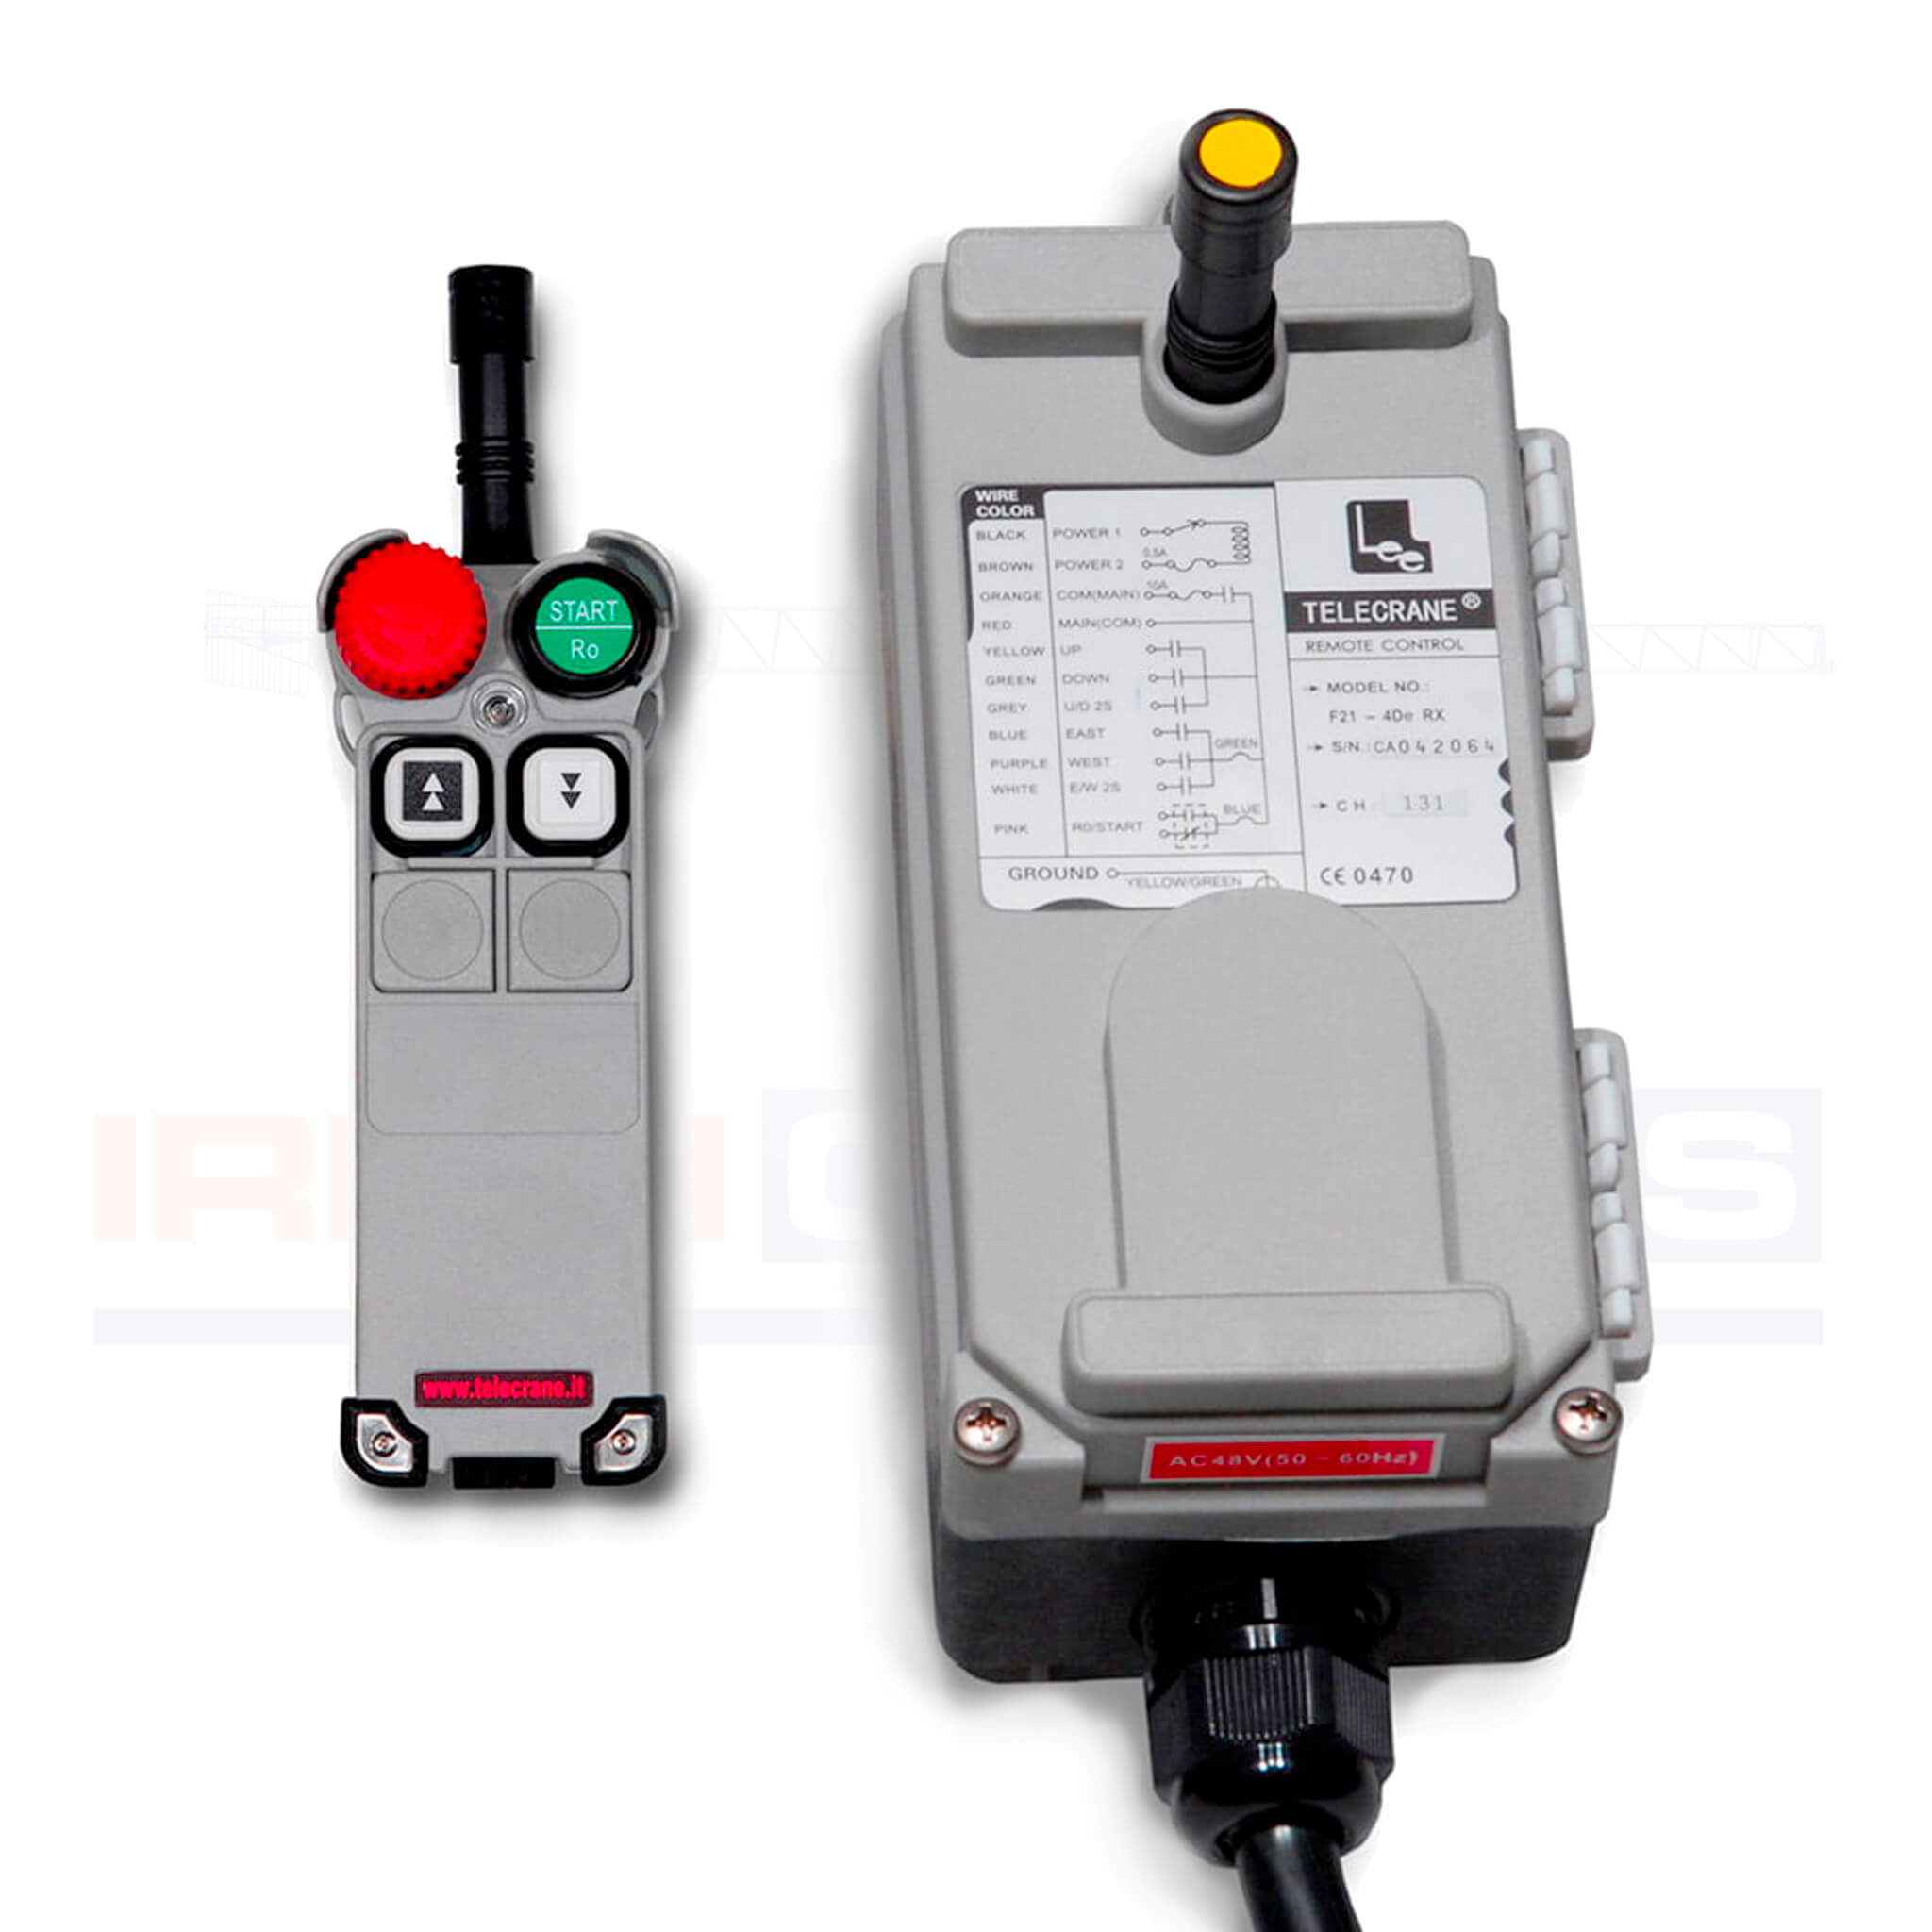 Hoist 1 Transmitter + 1 Receiver Crane Wireless Remote Control F21-4D AC/DC65V-440V 